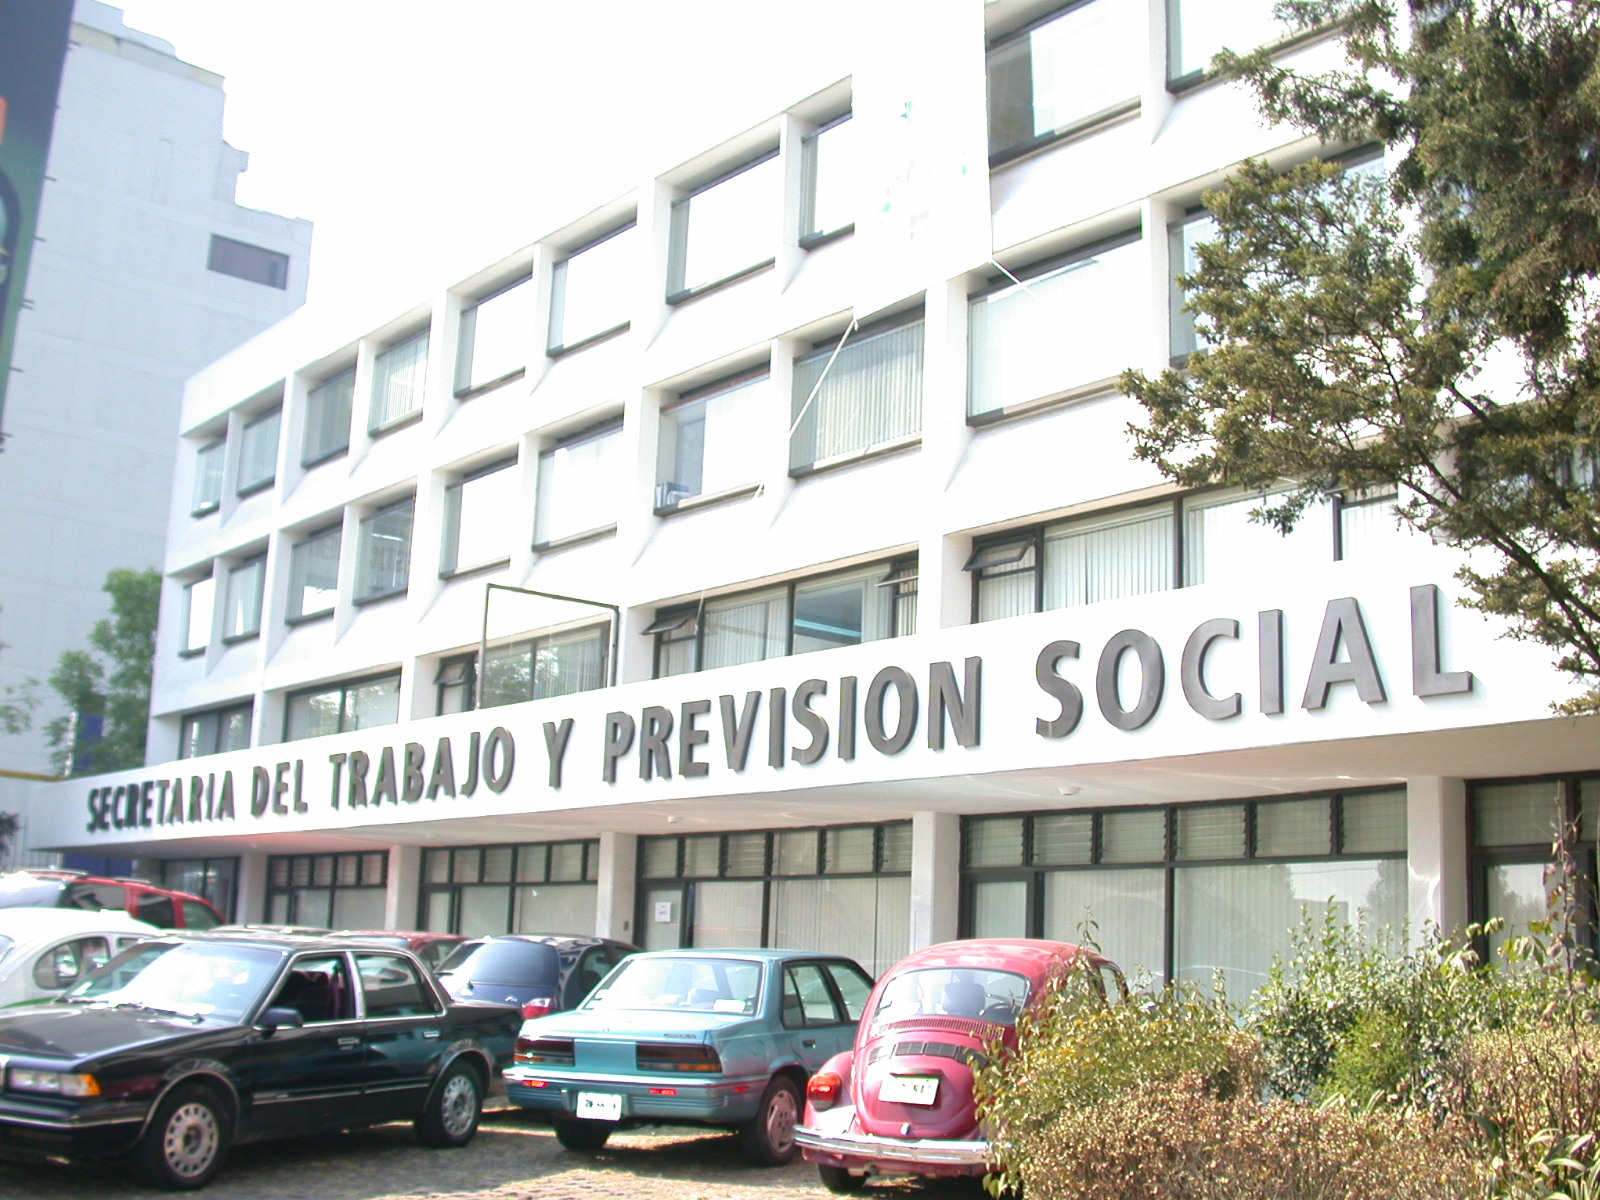 Edificio de la Secretaría del Trabajo y Previsión Social